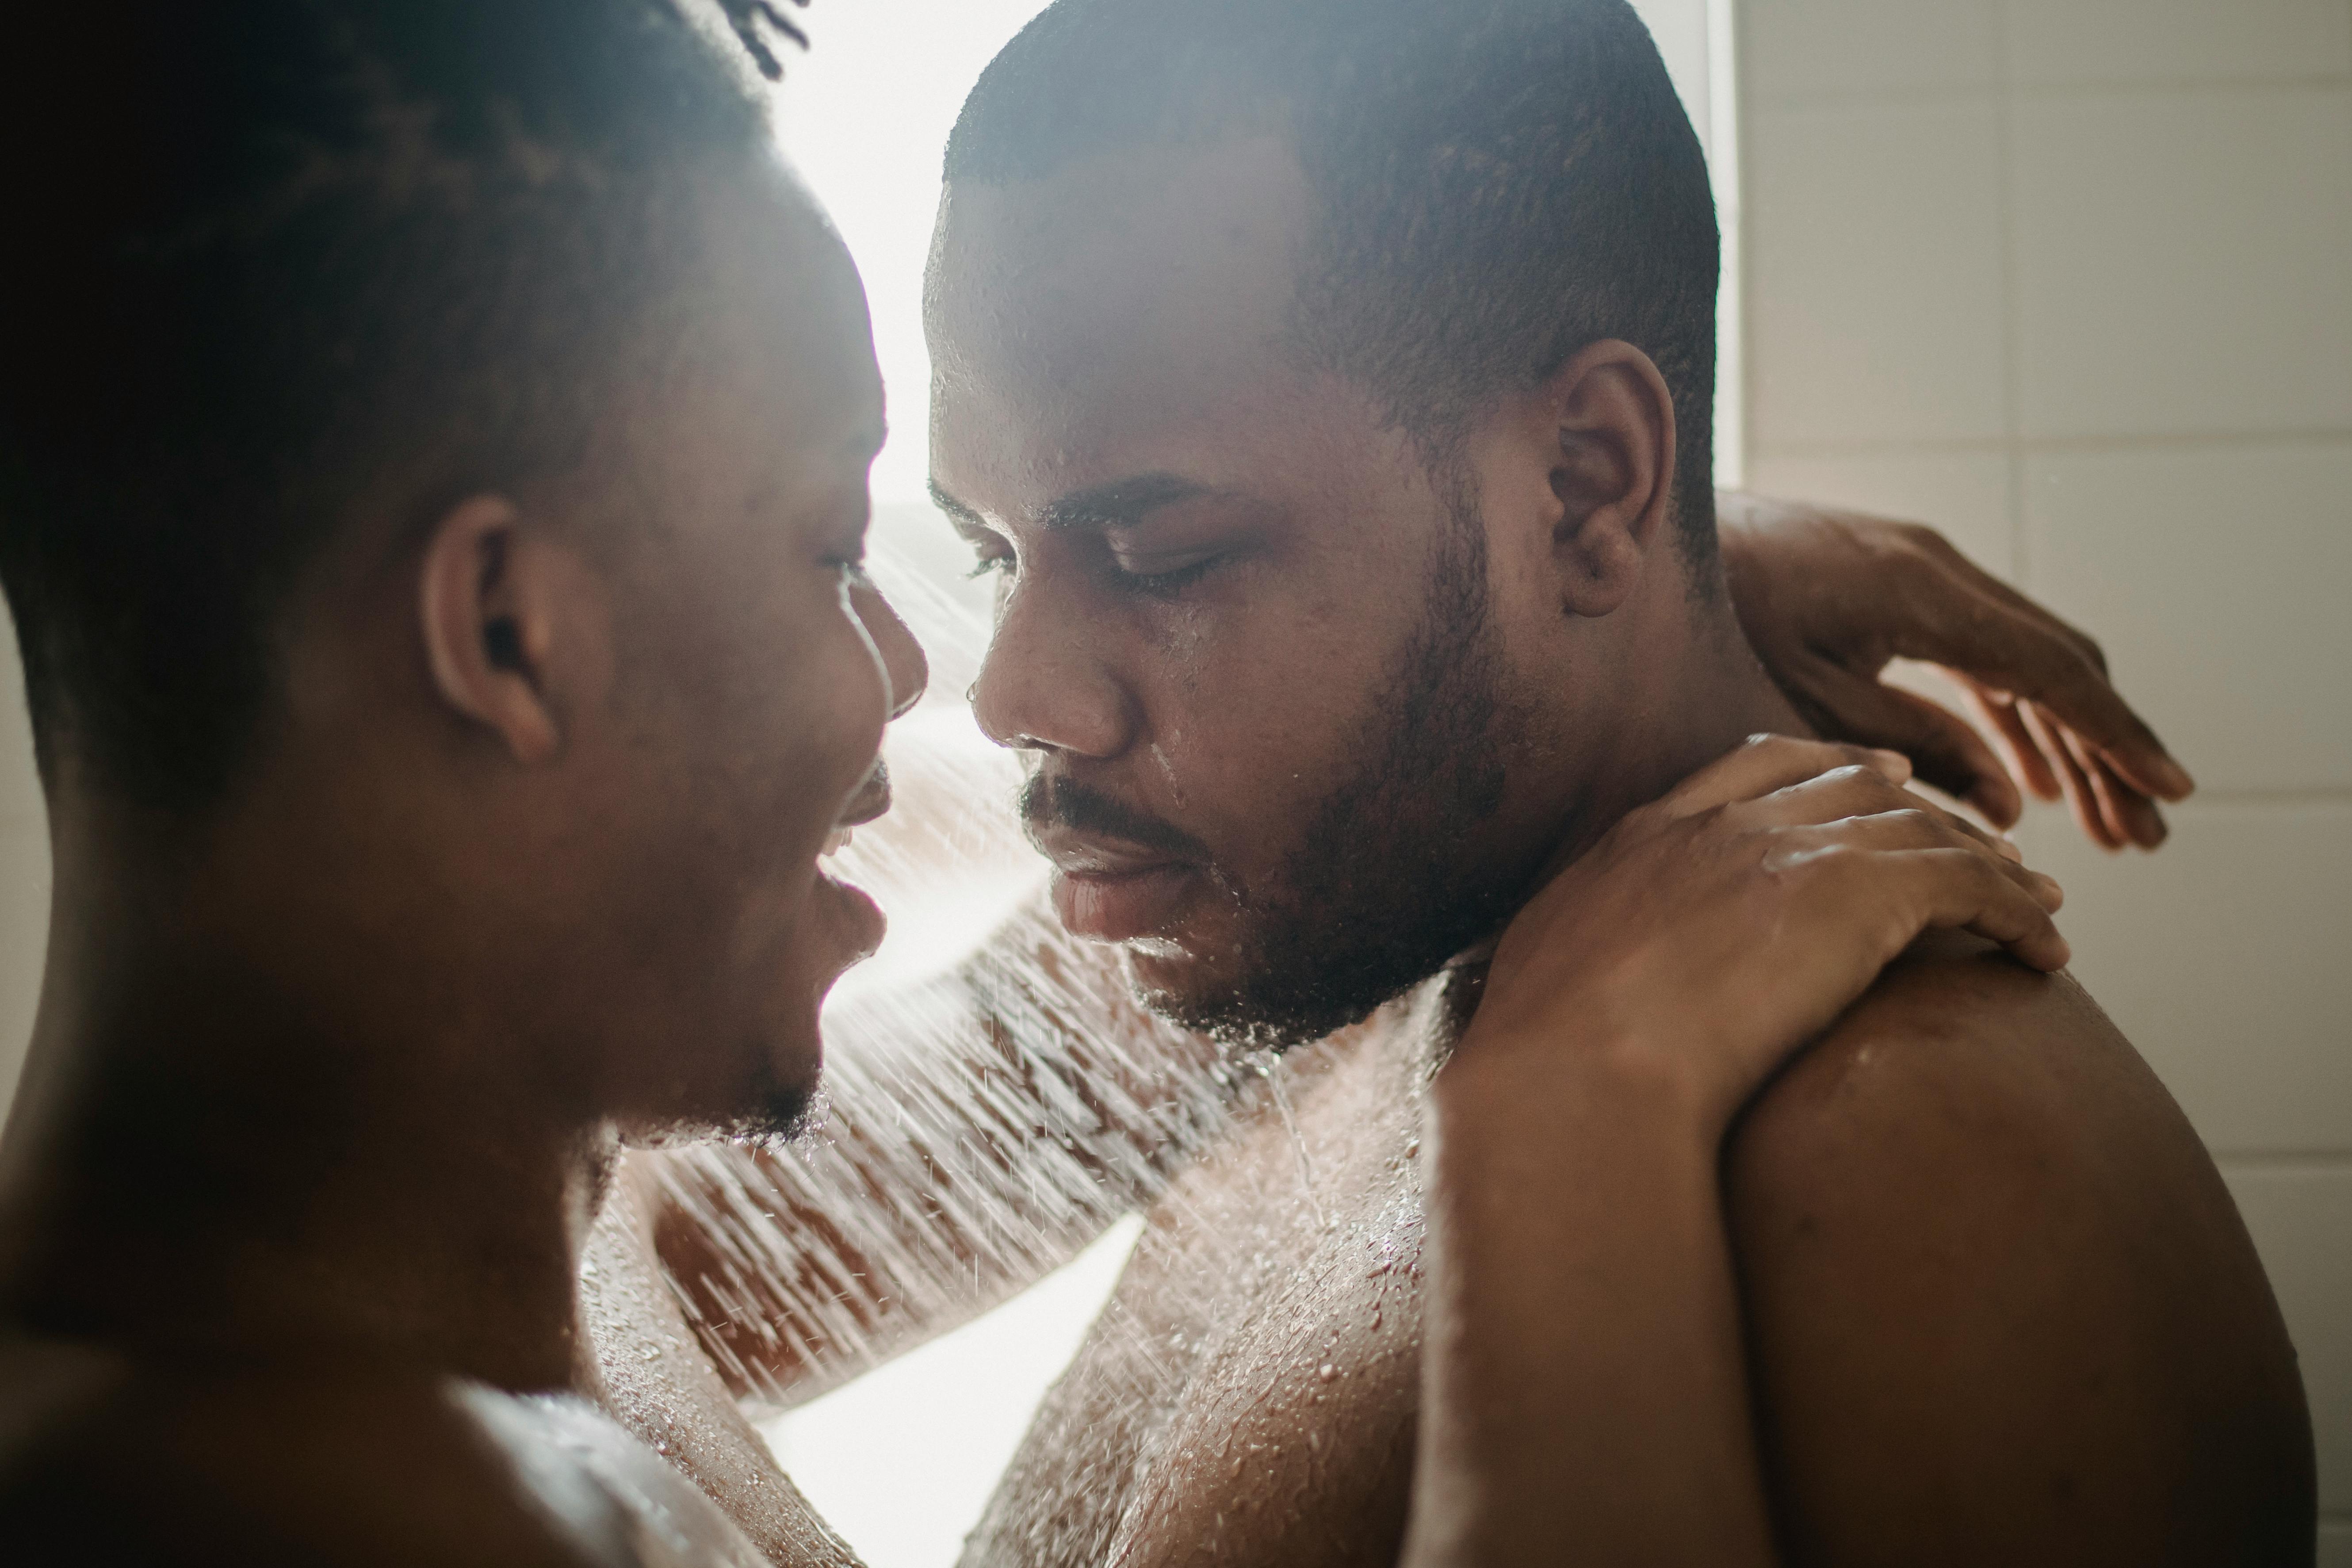 men taking a shower together